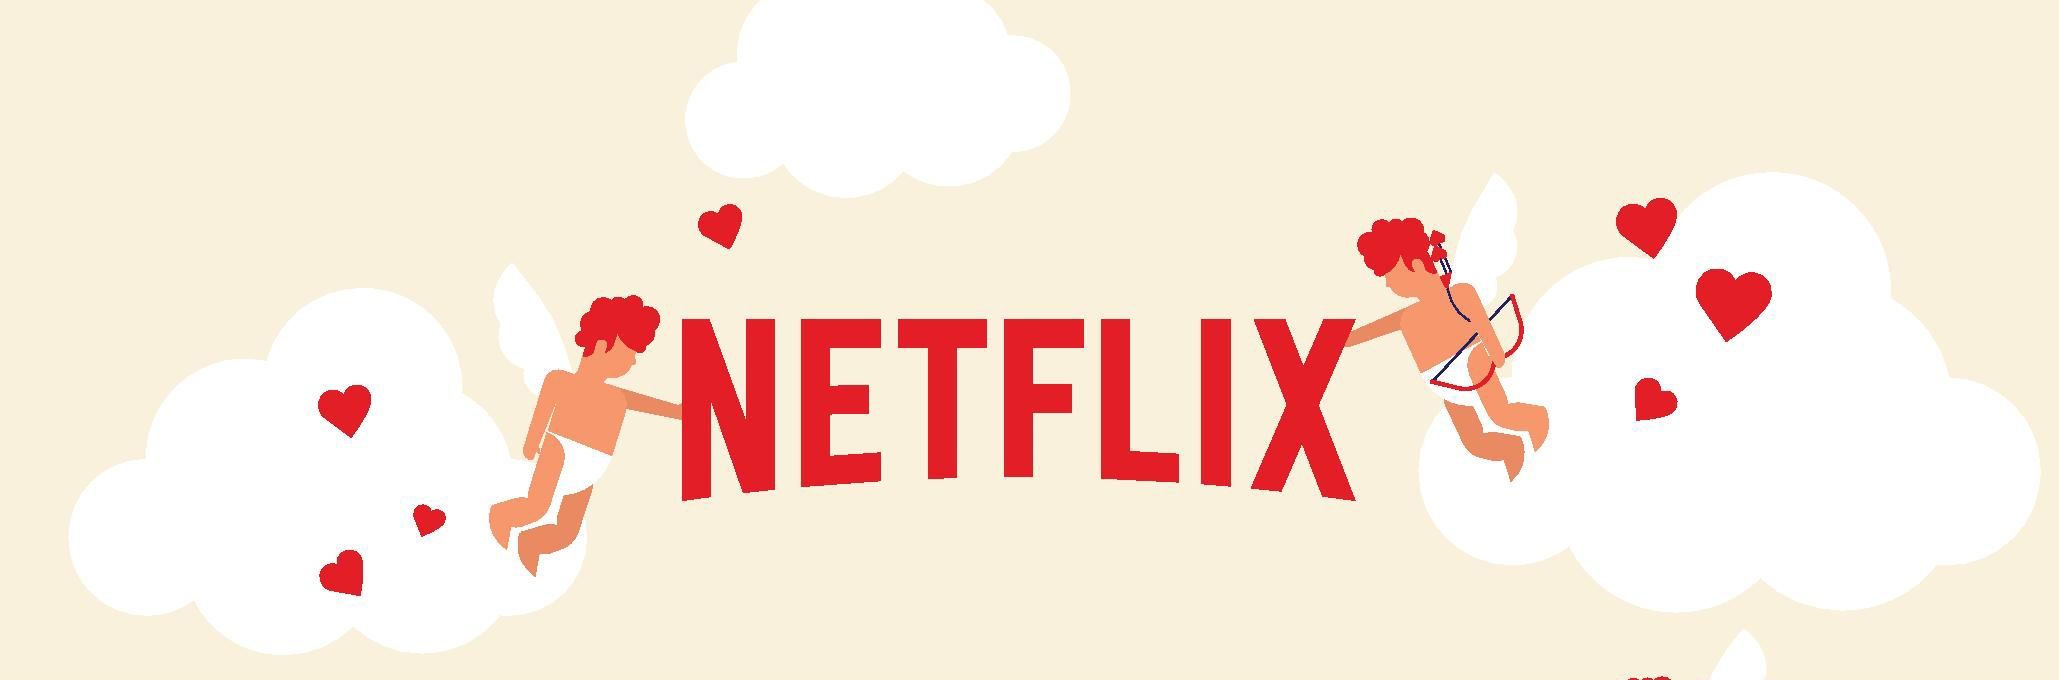 Dal cortometraggio al matrimonio: l'infografica di Netflix ci parla della relazione tra streaming e vita di coppia